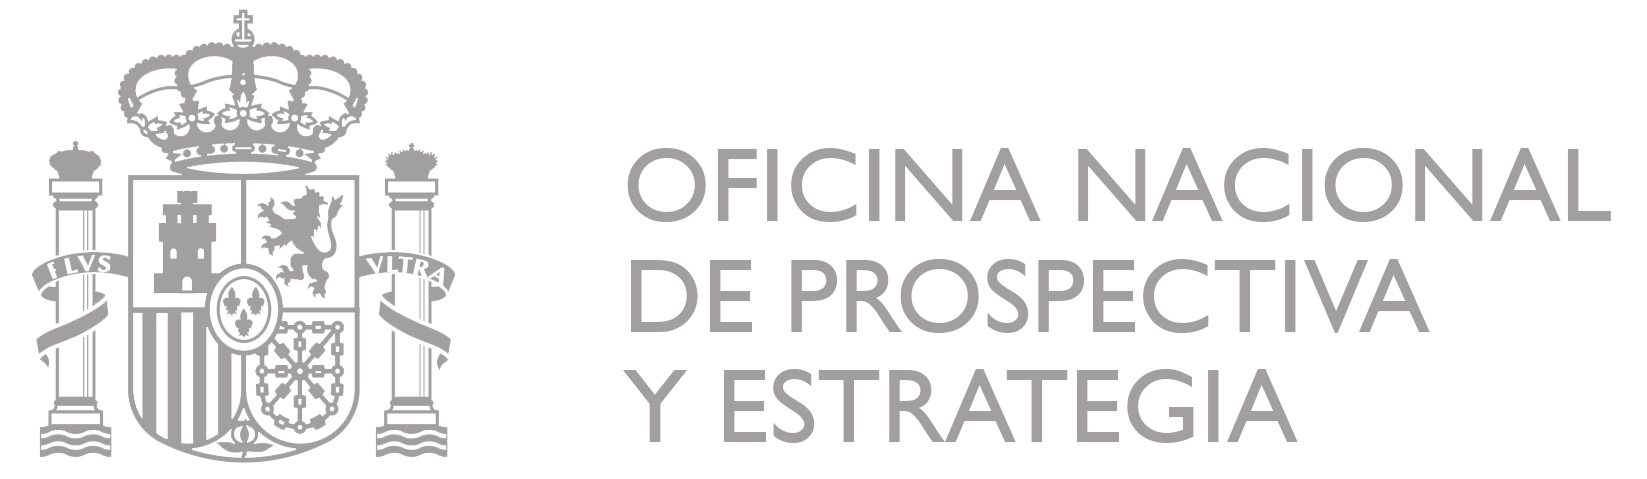 Logo Oficina nacional de prospectiva y estrategia